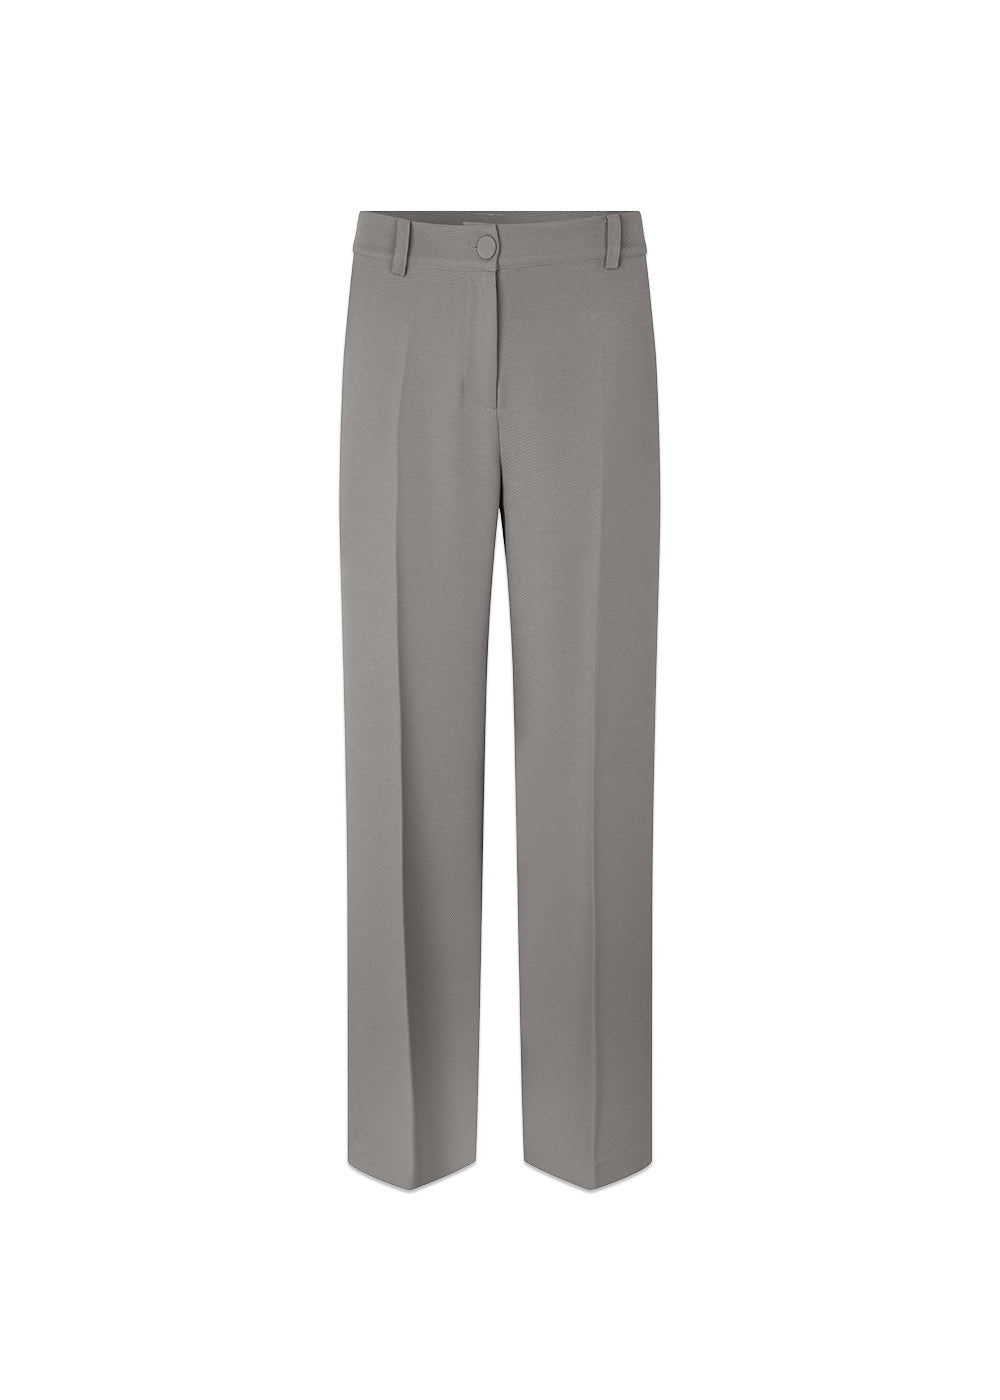 Modströms GrayMD pants - Steeple Gray. Køb jakkesæt women her.